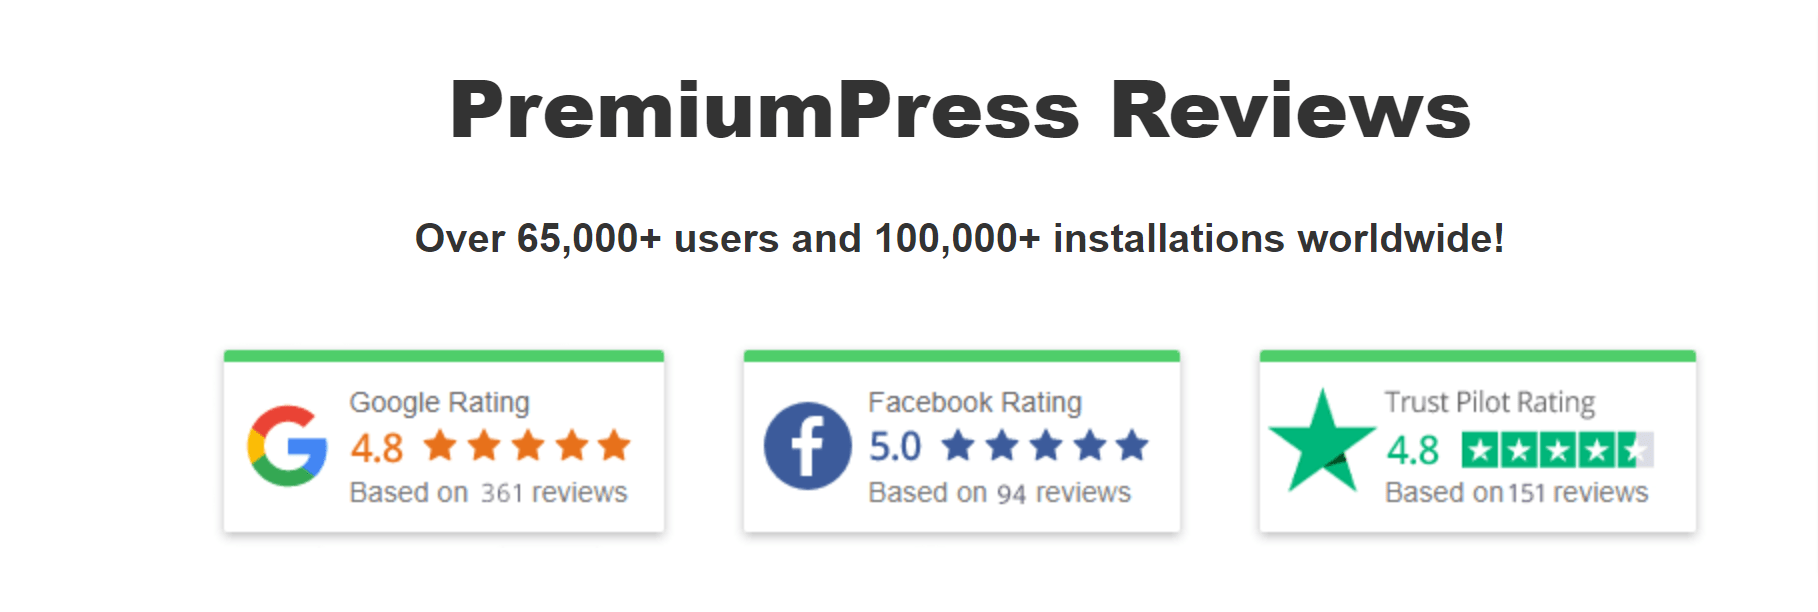 PremiumPress Reviews